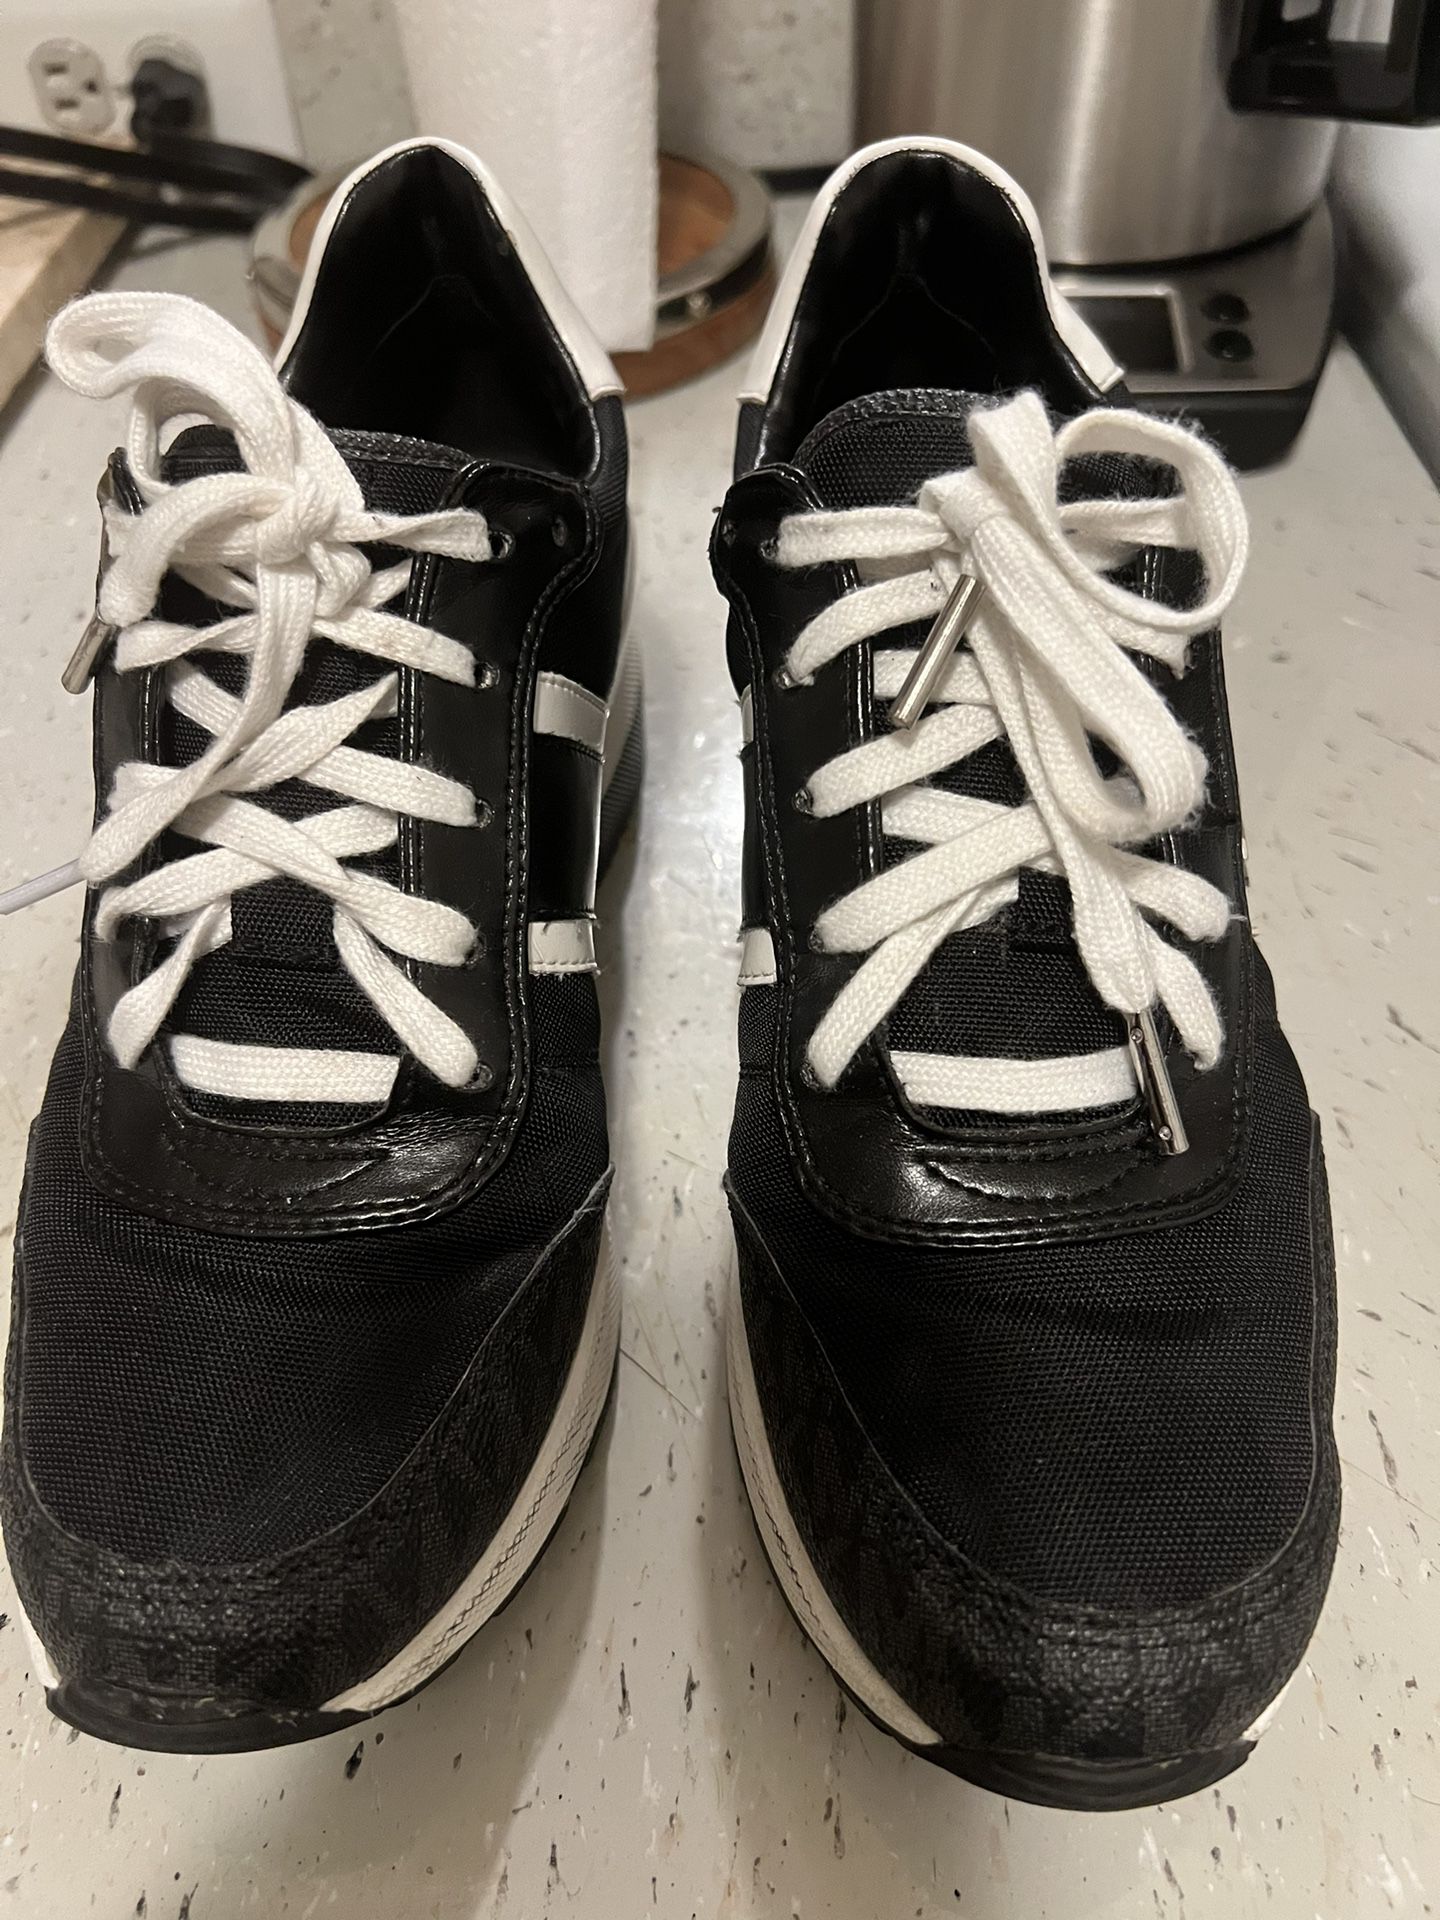 Michael Kors Women's Shoes Size 7.5